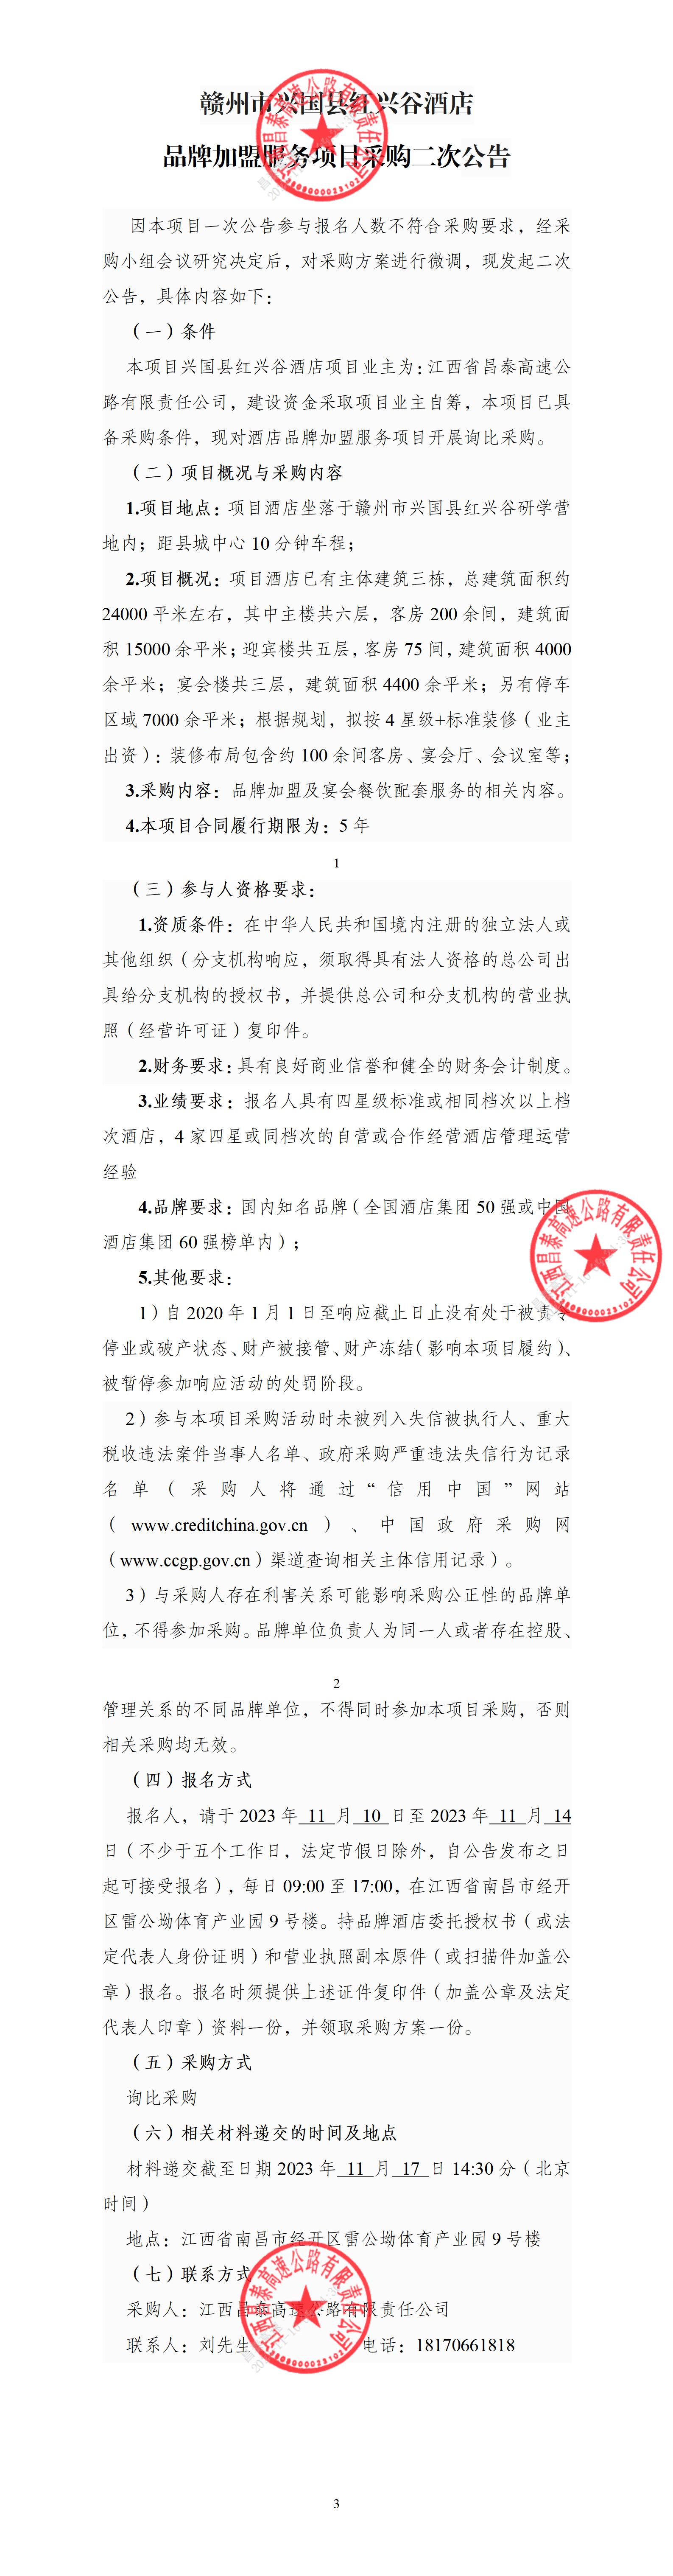 赣州市兴国县红兴谷酒店品牌加盟服务项目采购二次公告